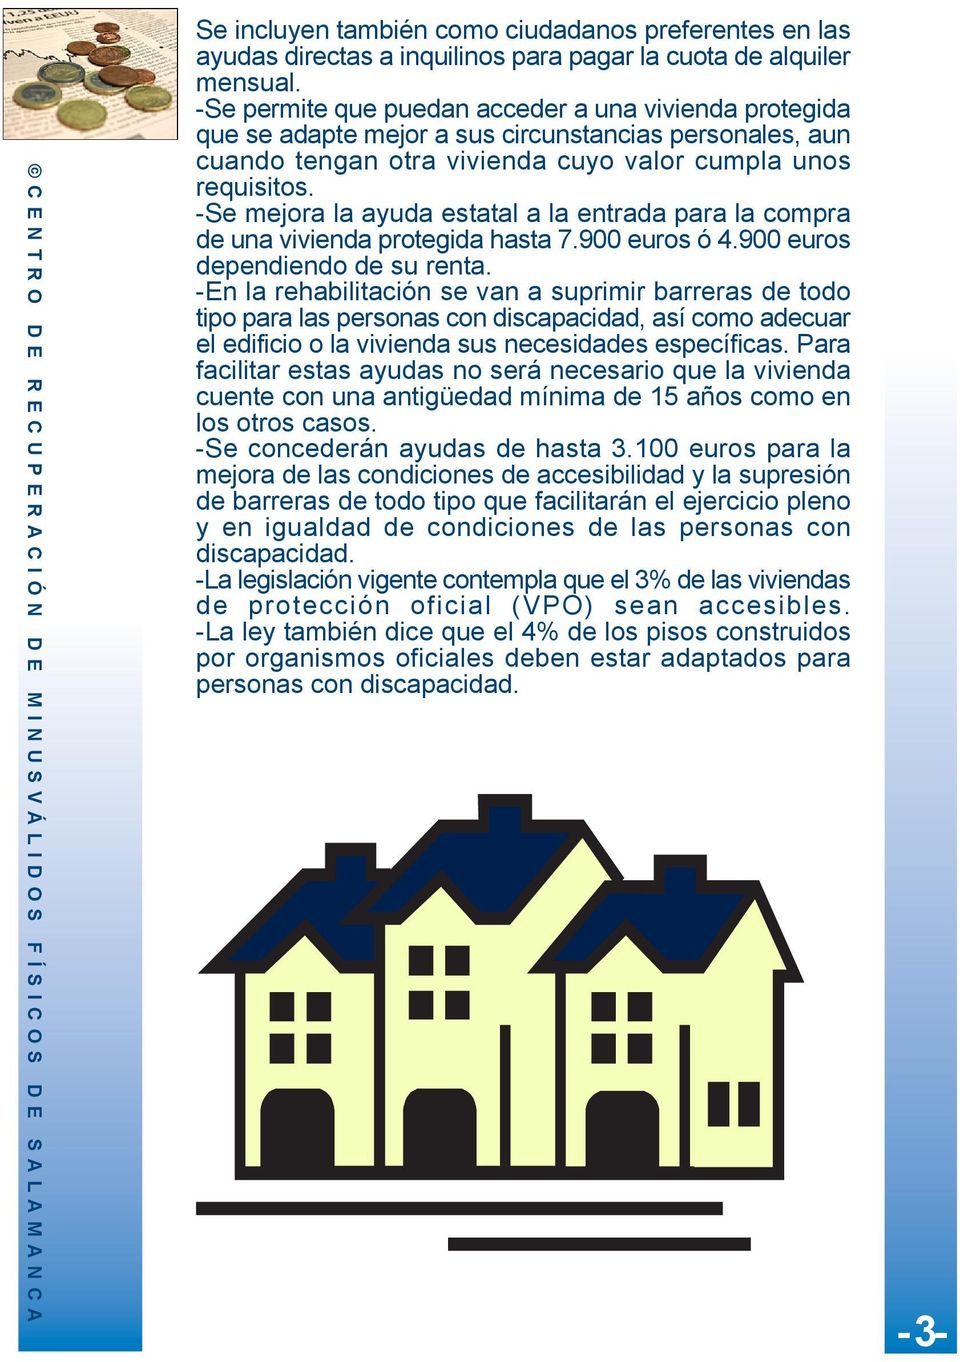 -Se mejora la ayuda estatal a la entrada para la compra de una vivienda protegida hasta 7.900 euros ó 4.900 euros dependiendo de su renta.